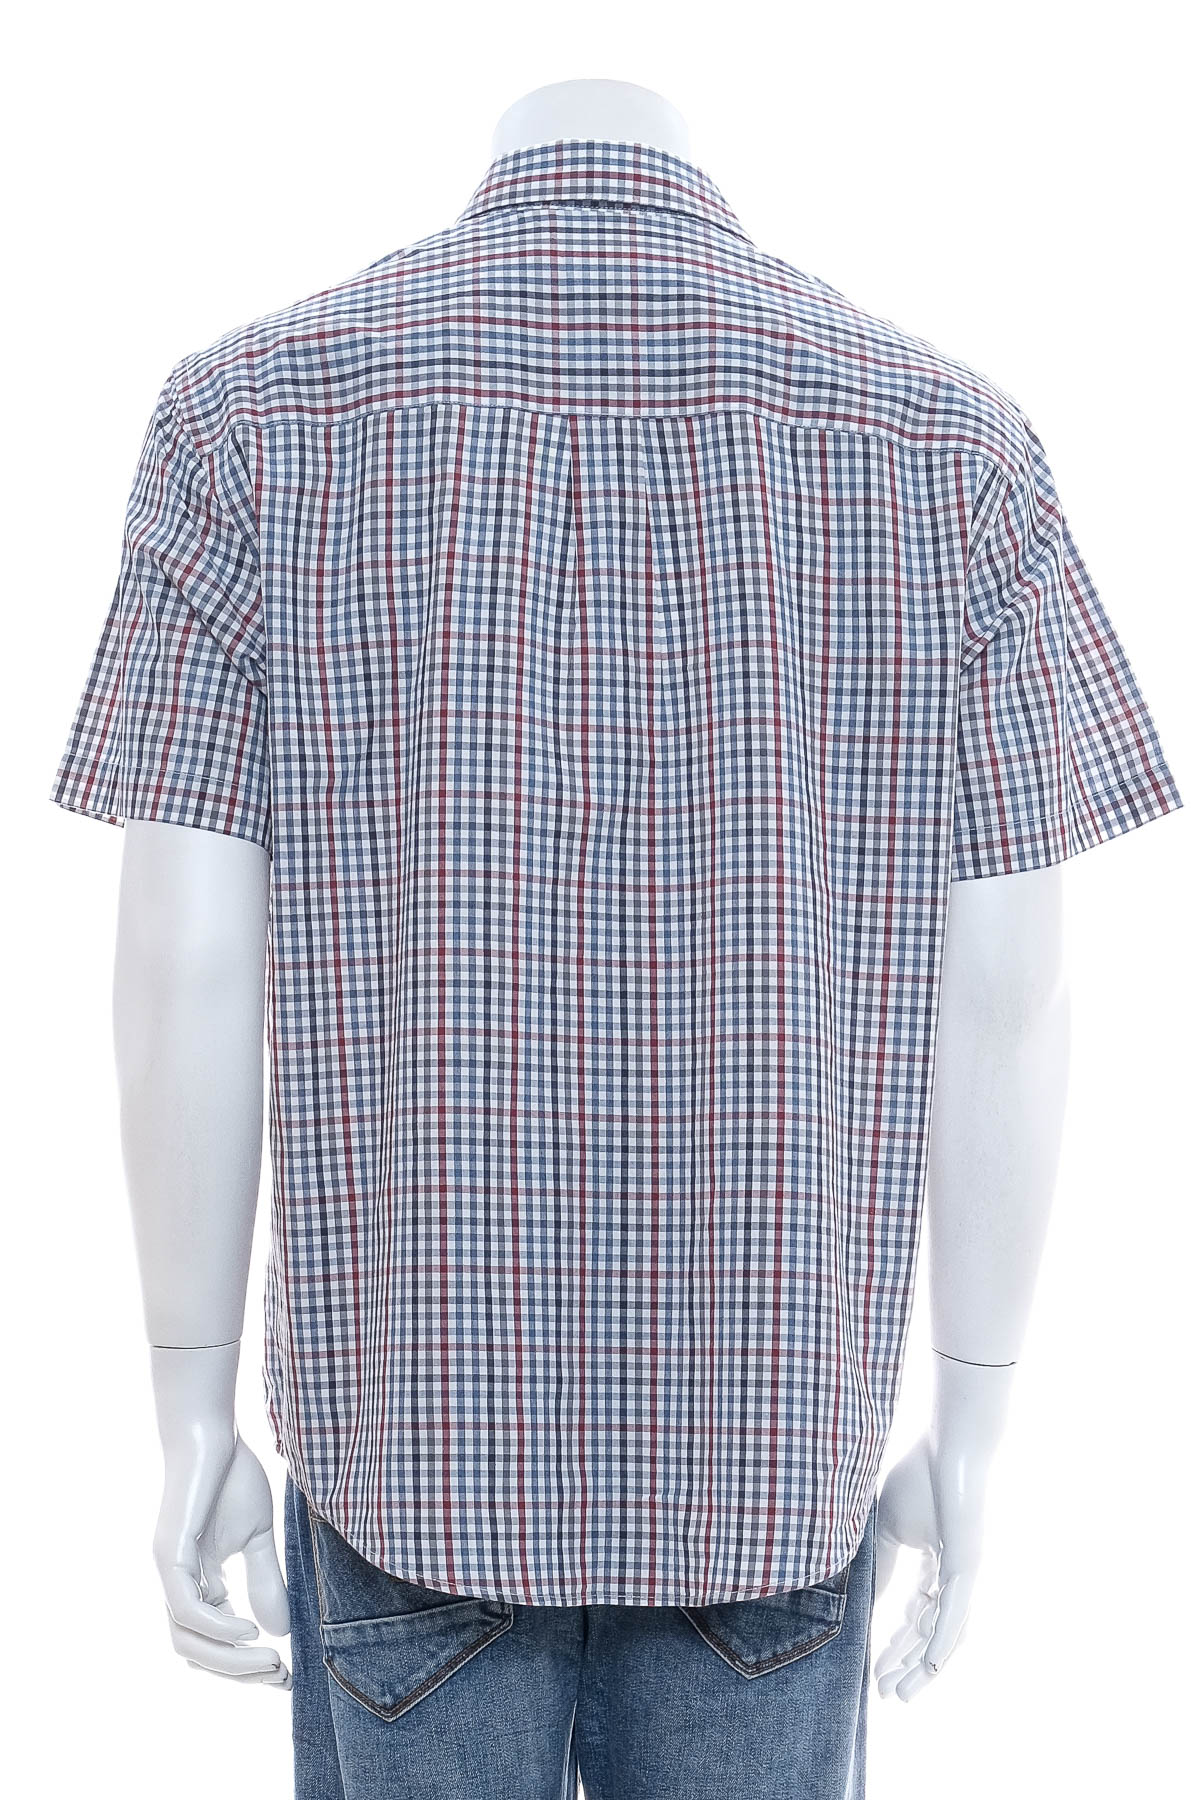 Men's shirt - Van Heusen - 1